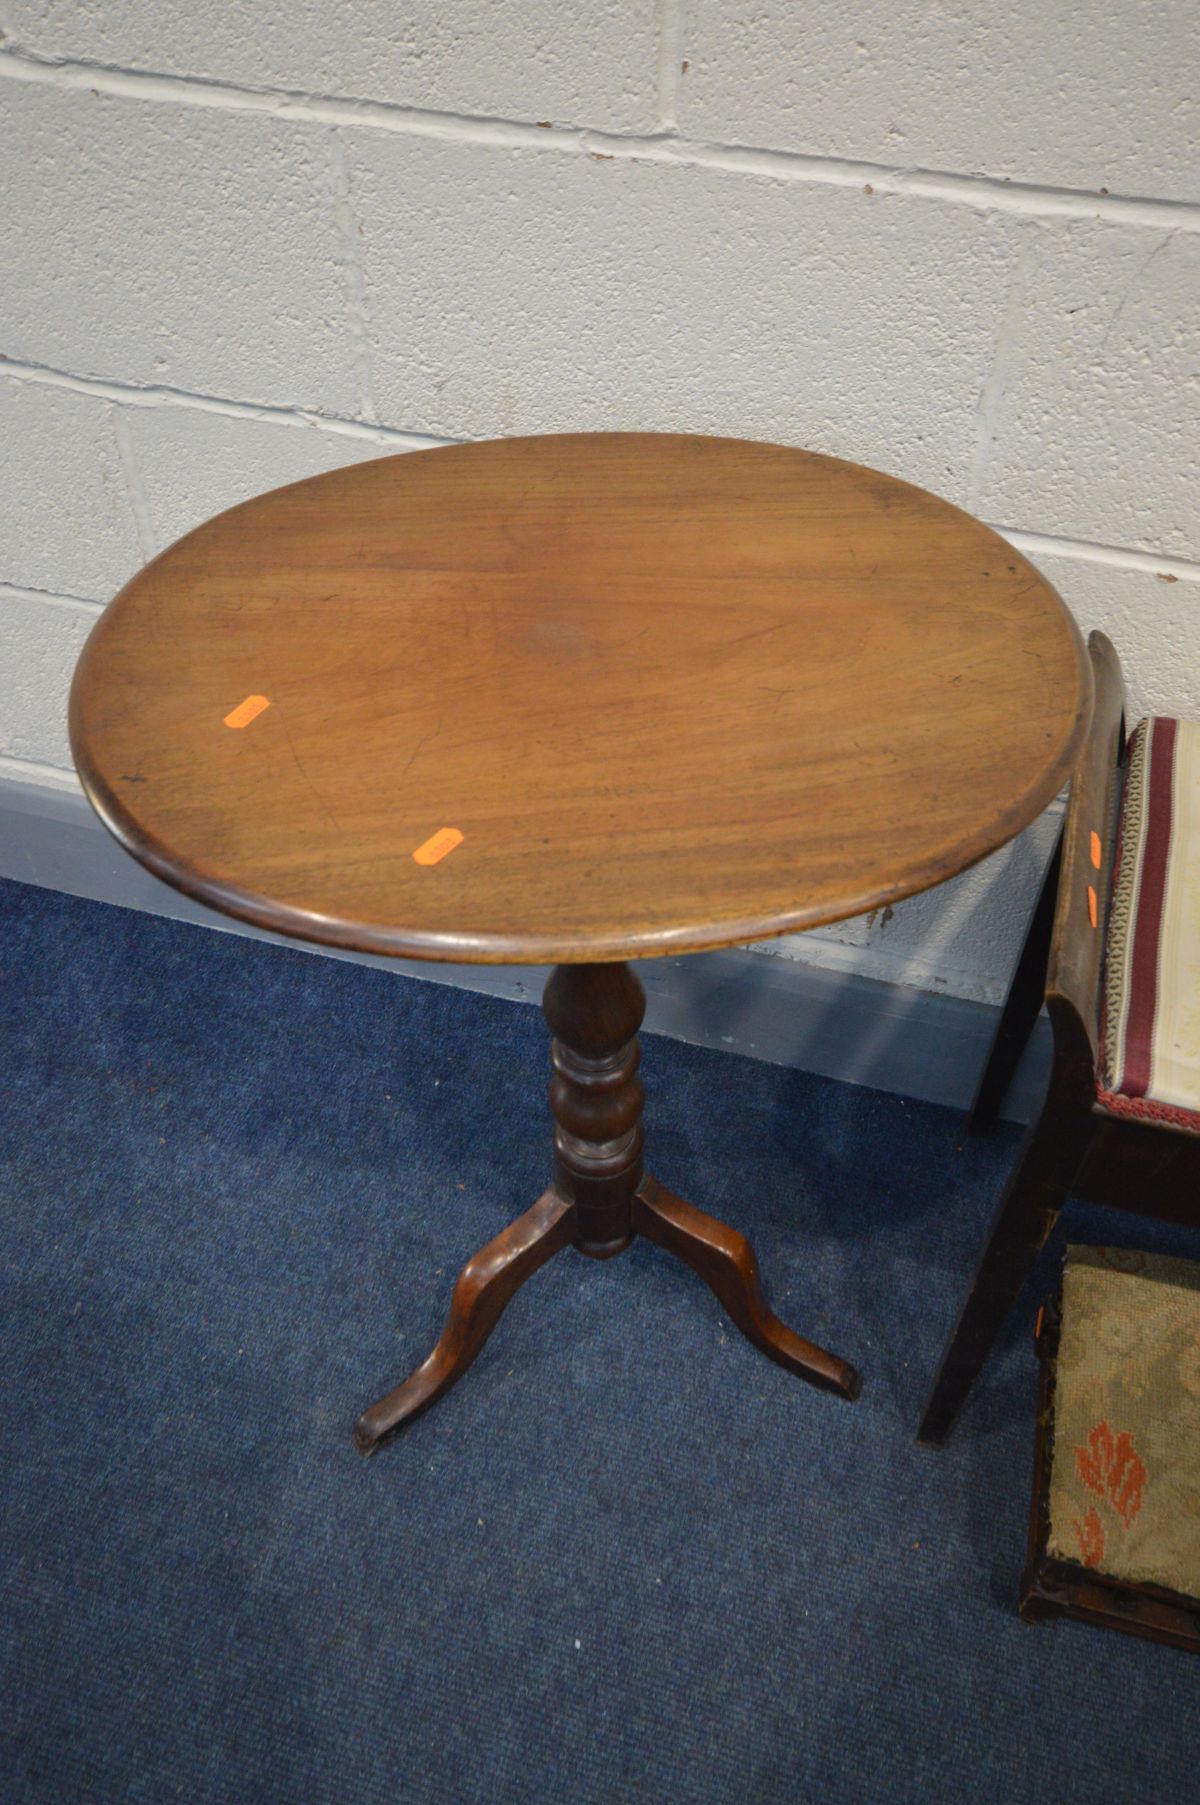 A VICTORIAN MAHOGANY OVAL TRIPOD TABLE, a low mahogany storage box/foot stool, Edwardian piano stool - Image 4 of 4